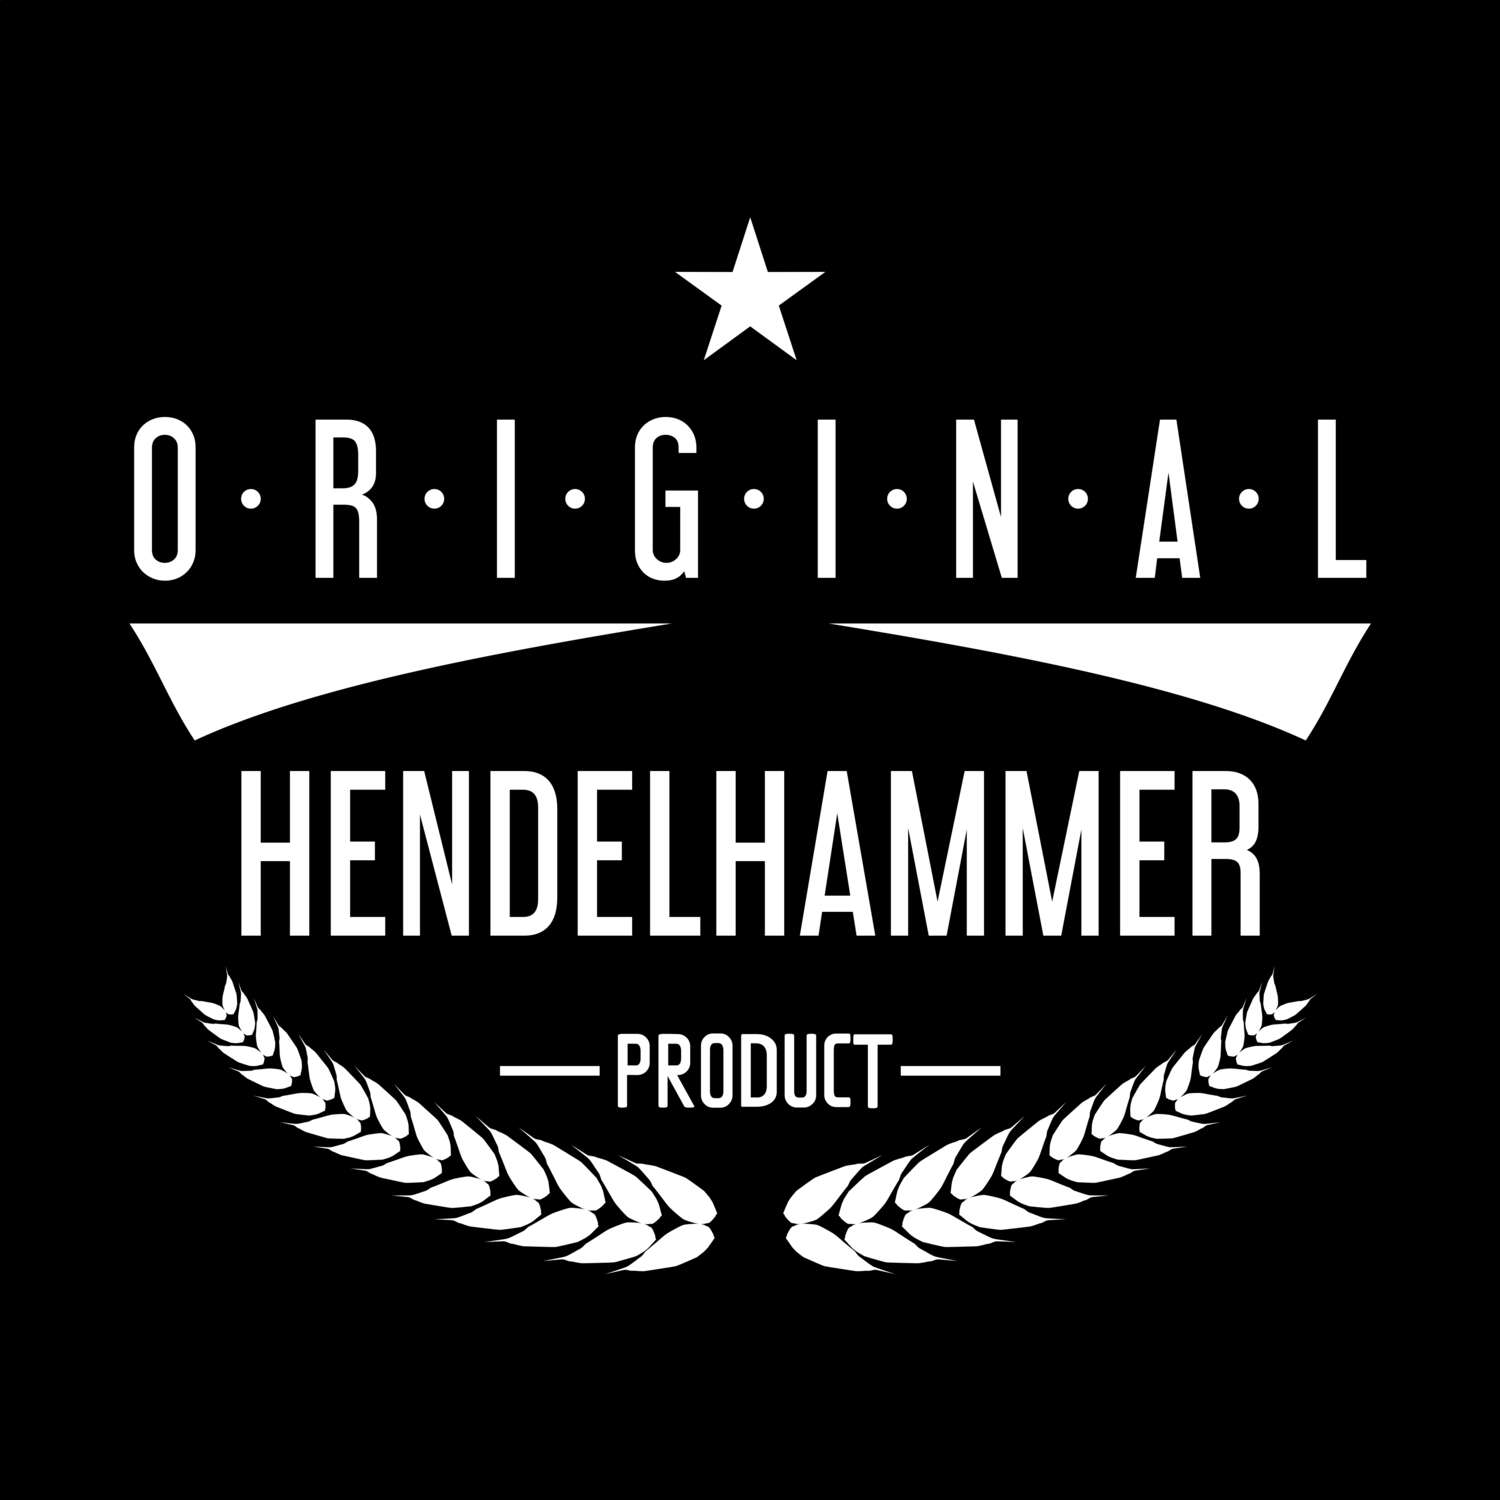 Hendelhammer T-Shirt »Original Product«